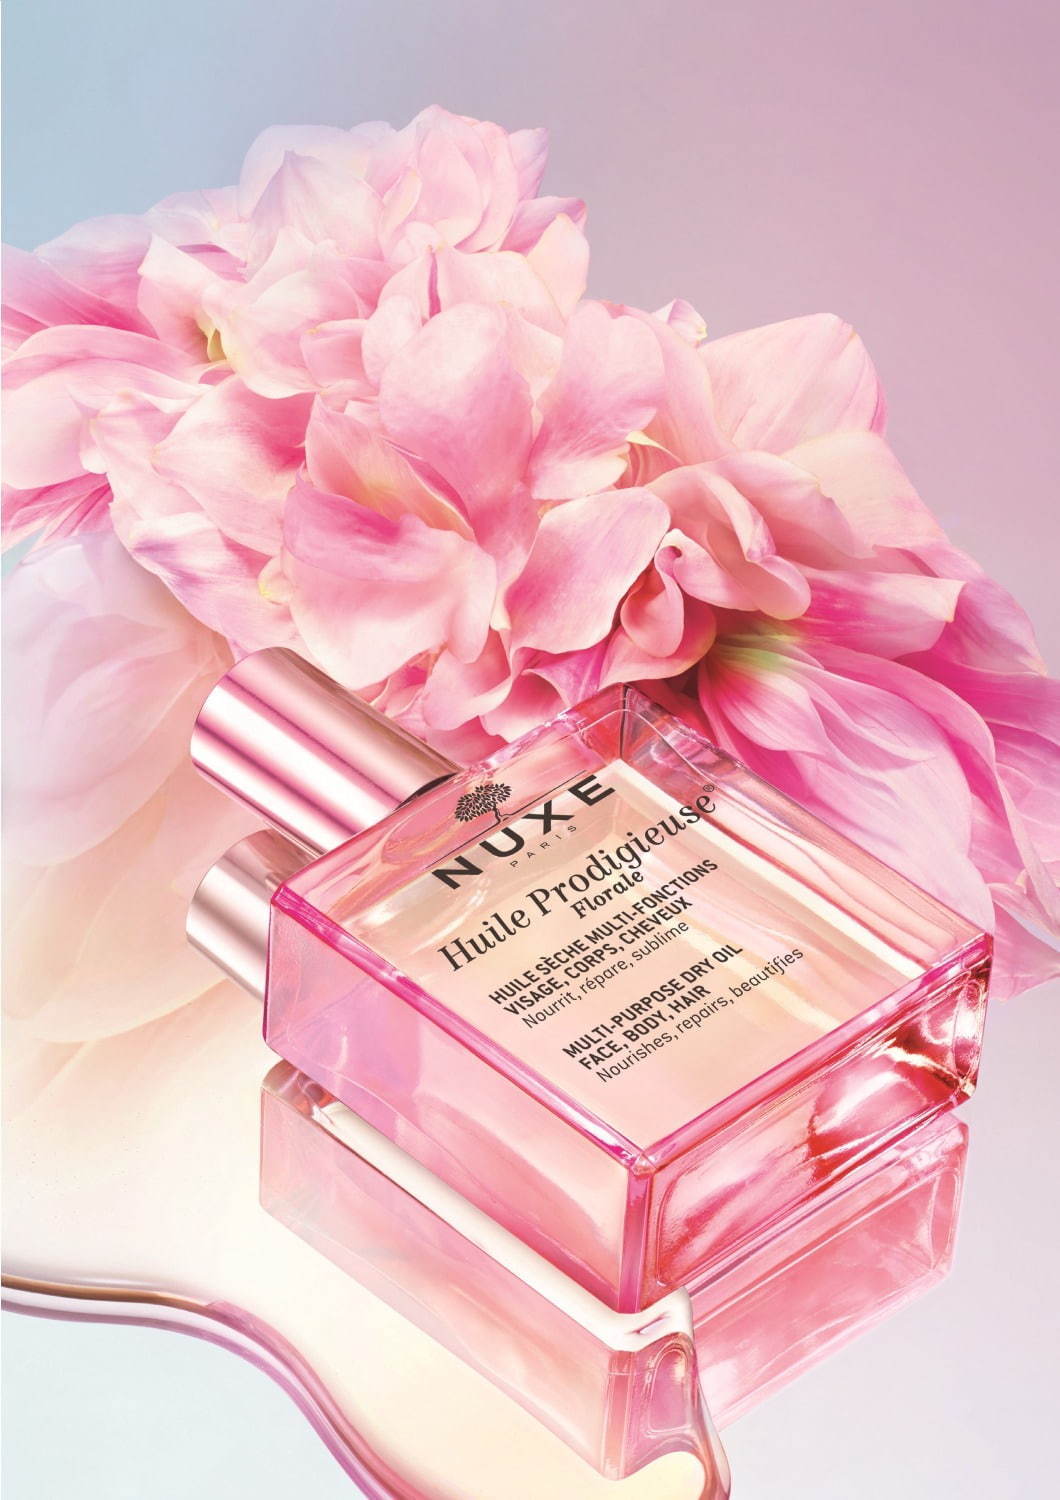 ニュクス“花々の香り”の美容オイル「プロディジュー フローラル オイル